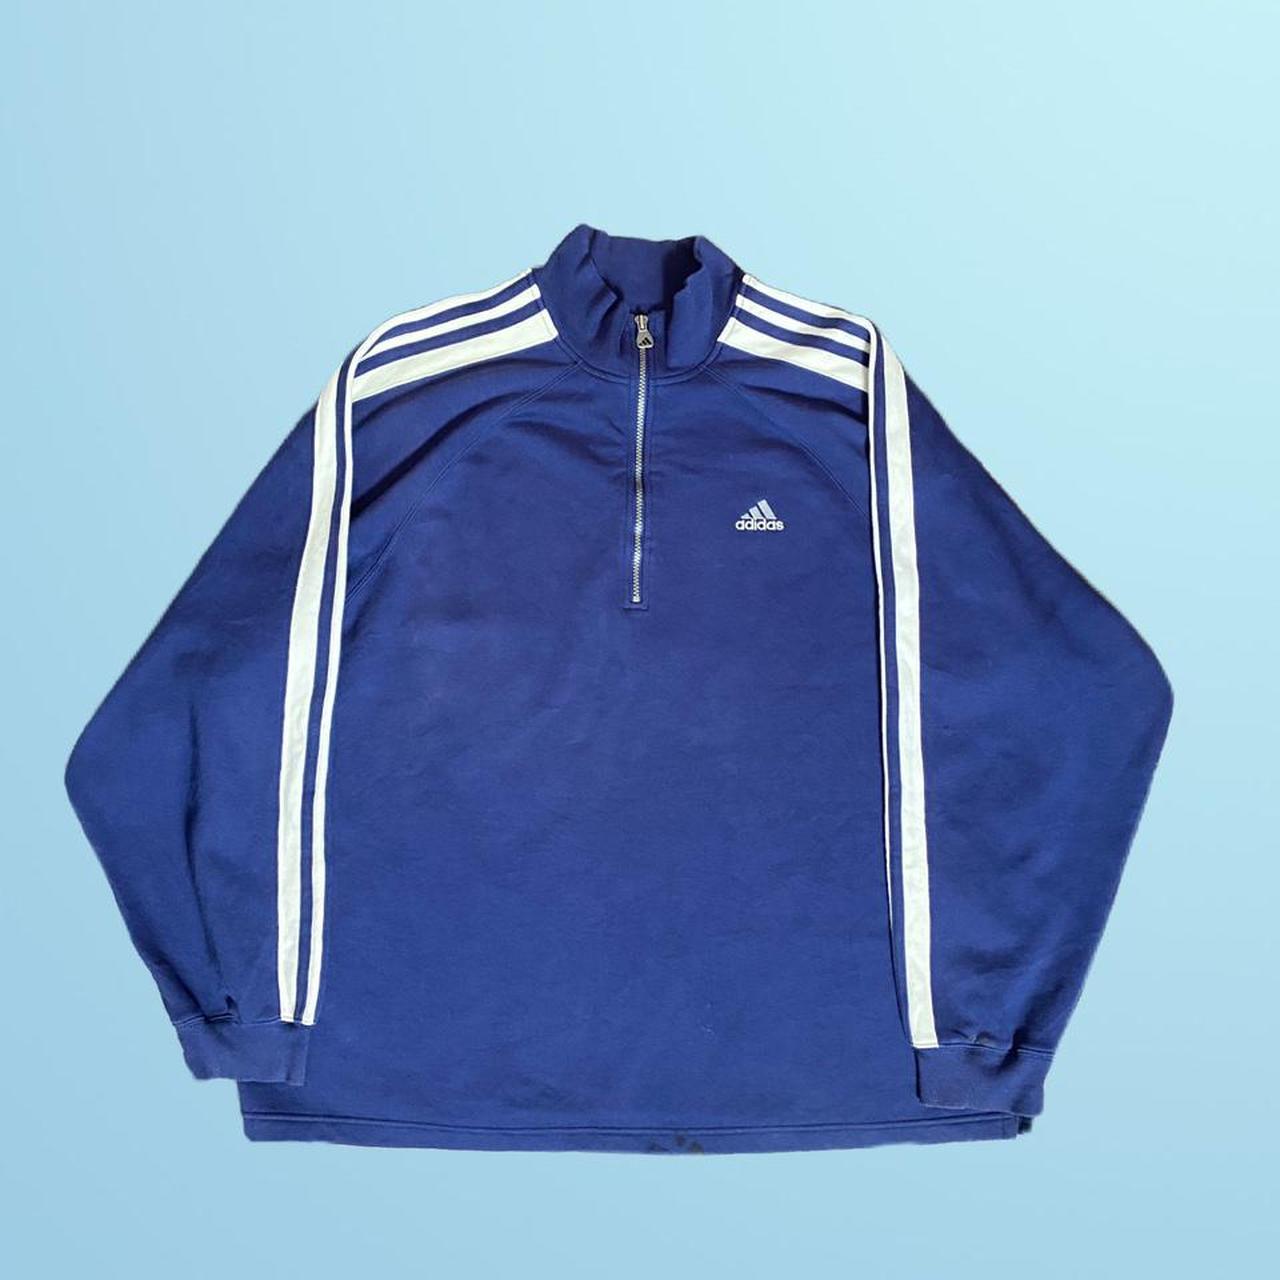 Vintage Adidas 1/4 Zip Sweatshirt in Navy Blue &... - Depop